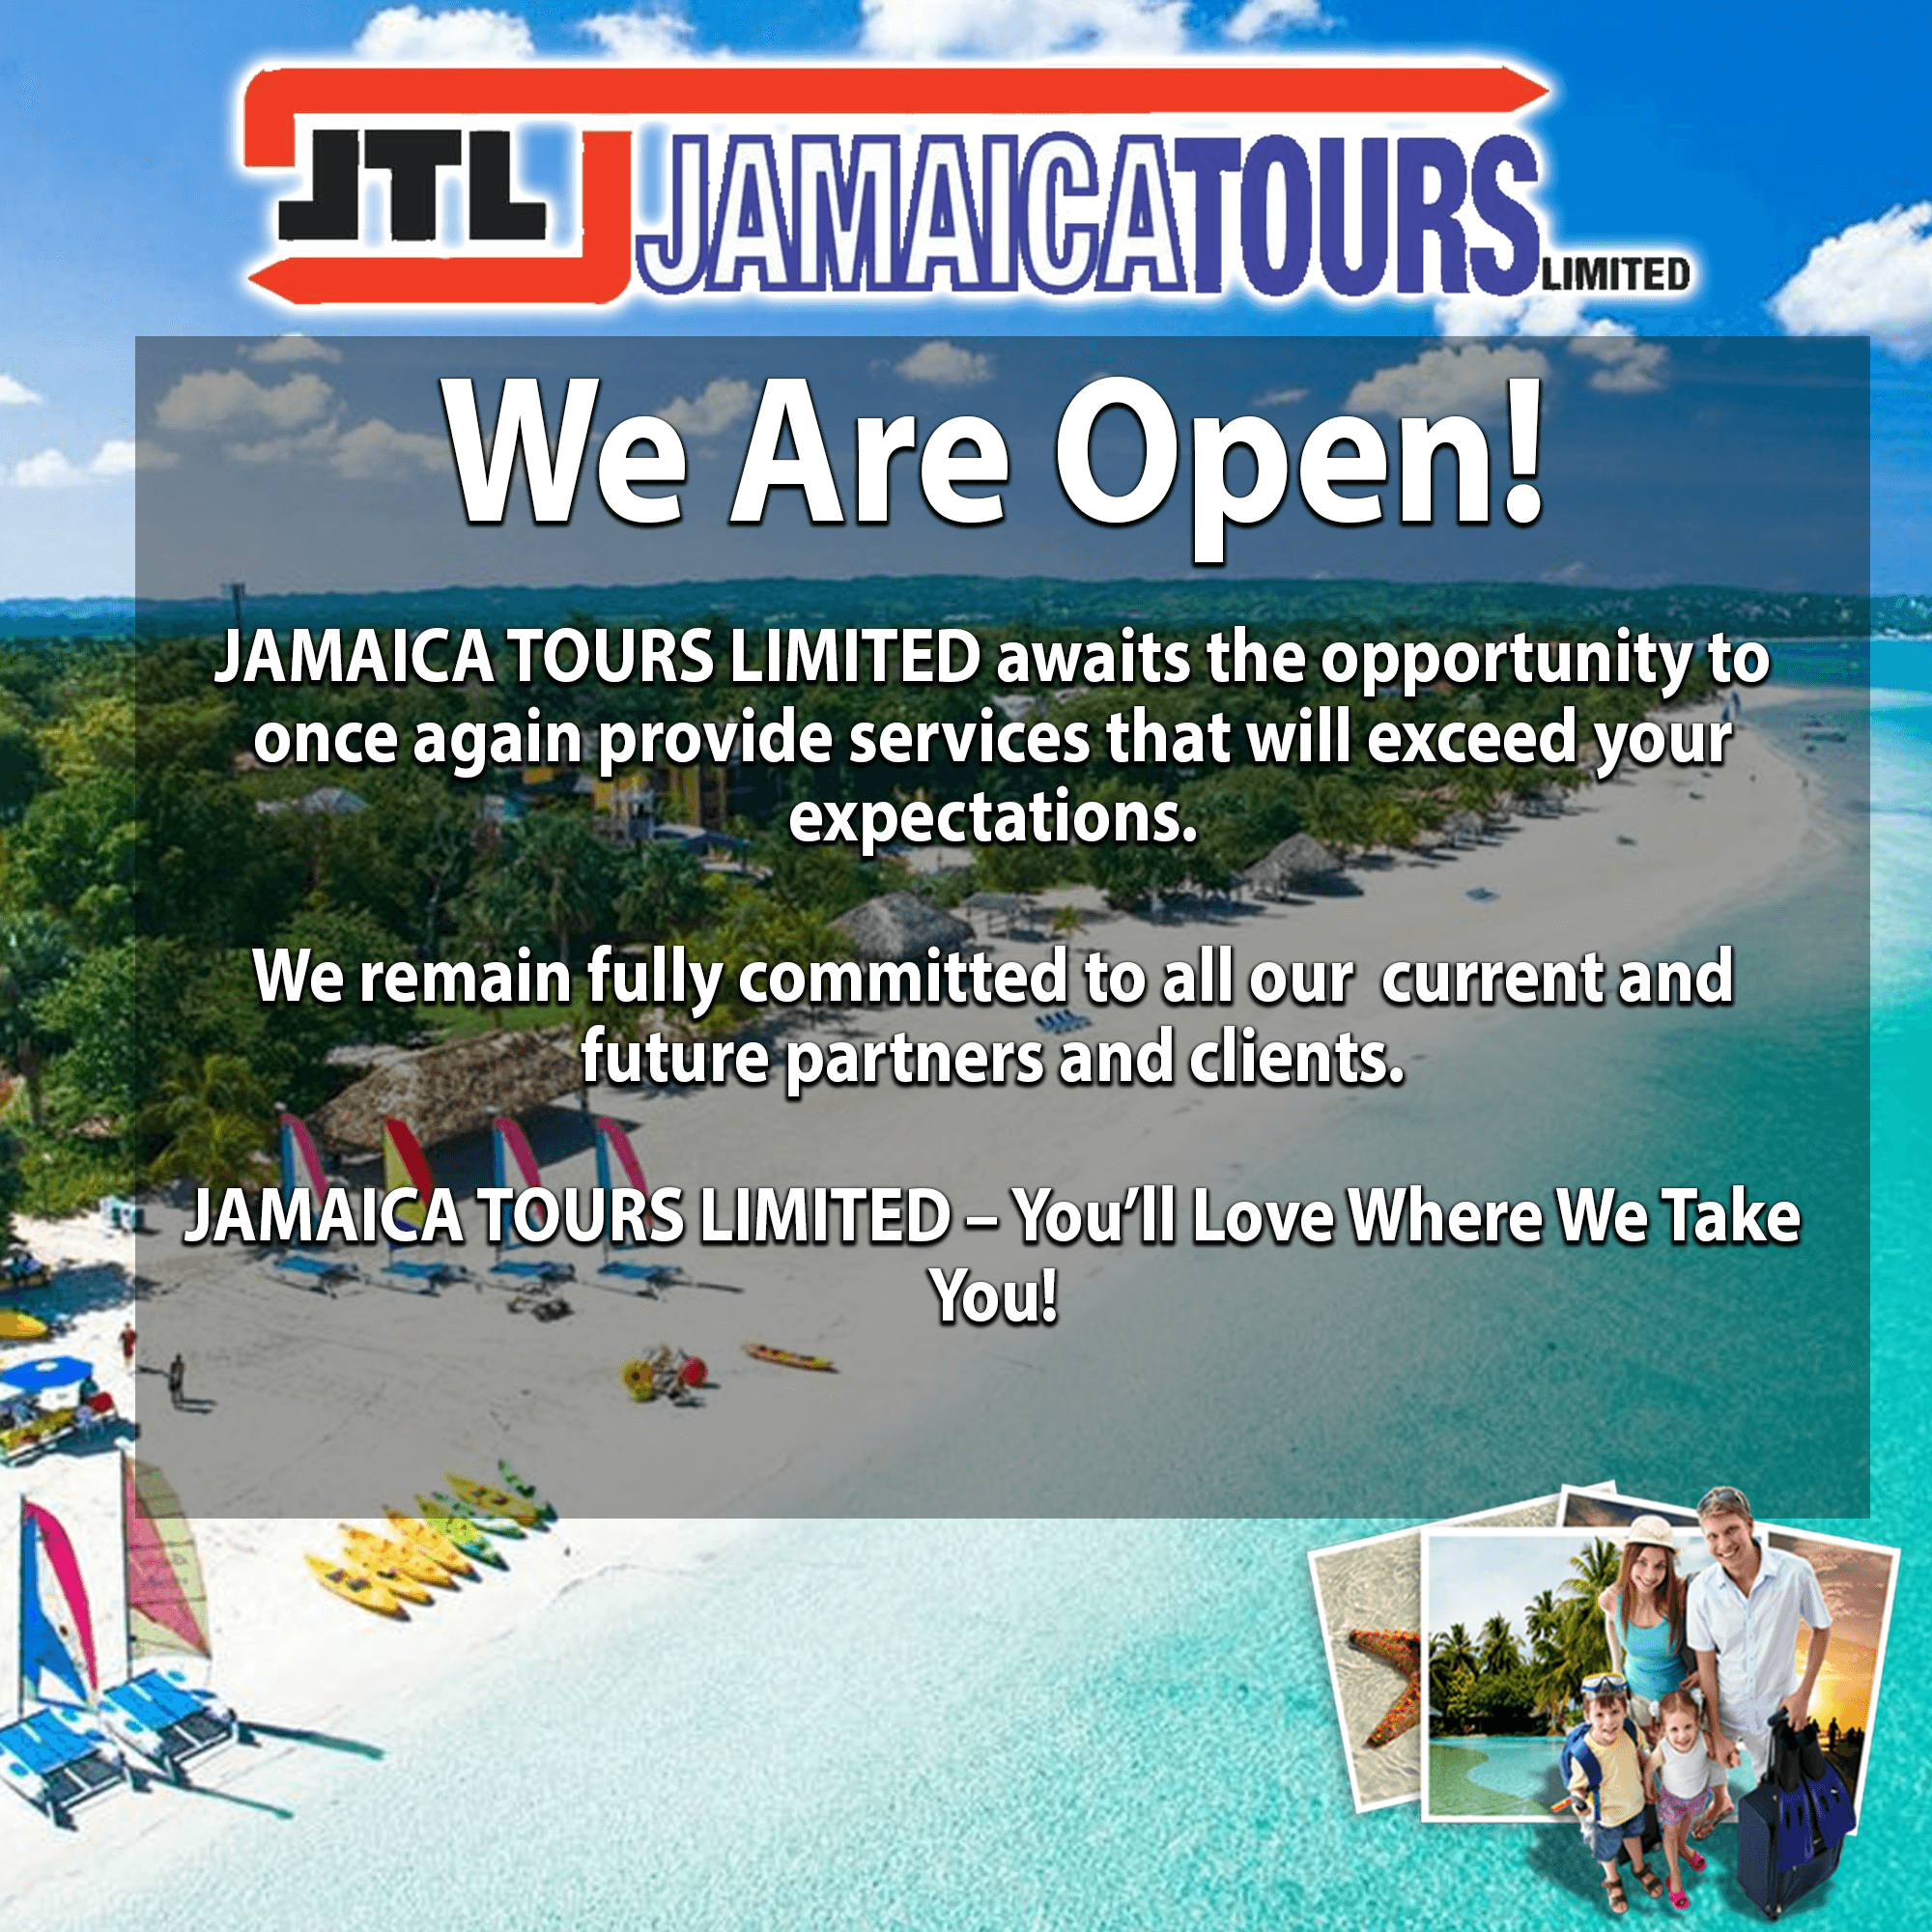 jtl jamaica tours limited